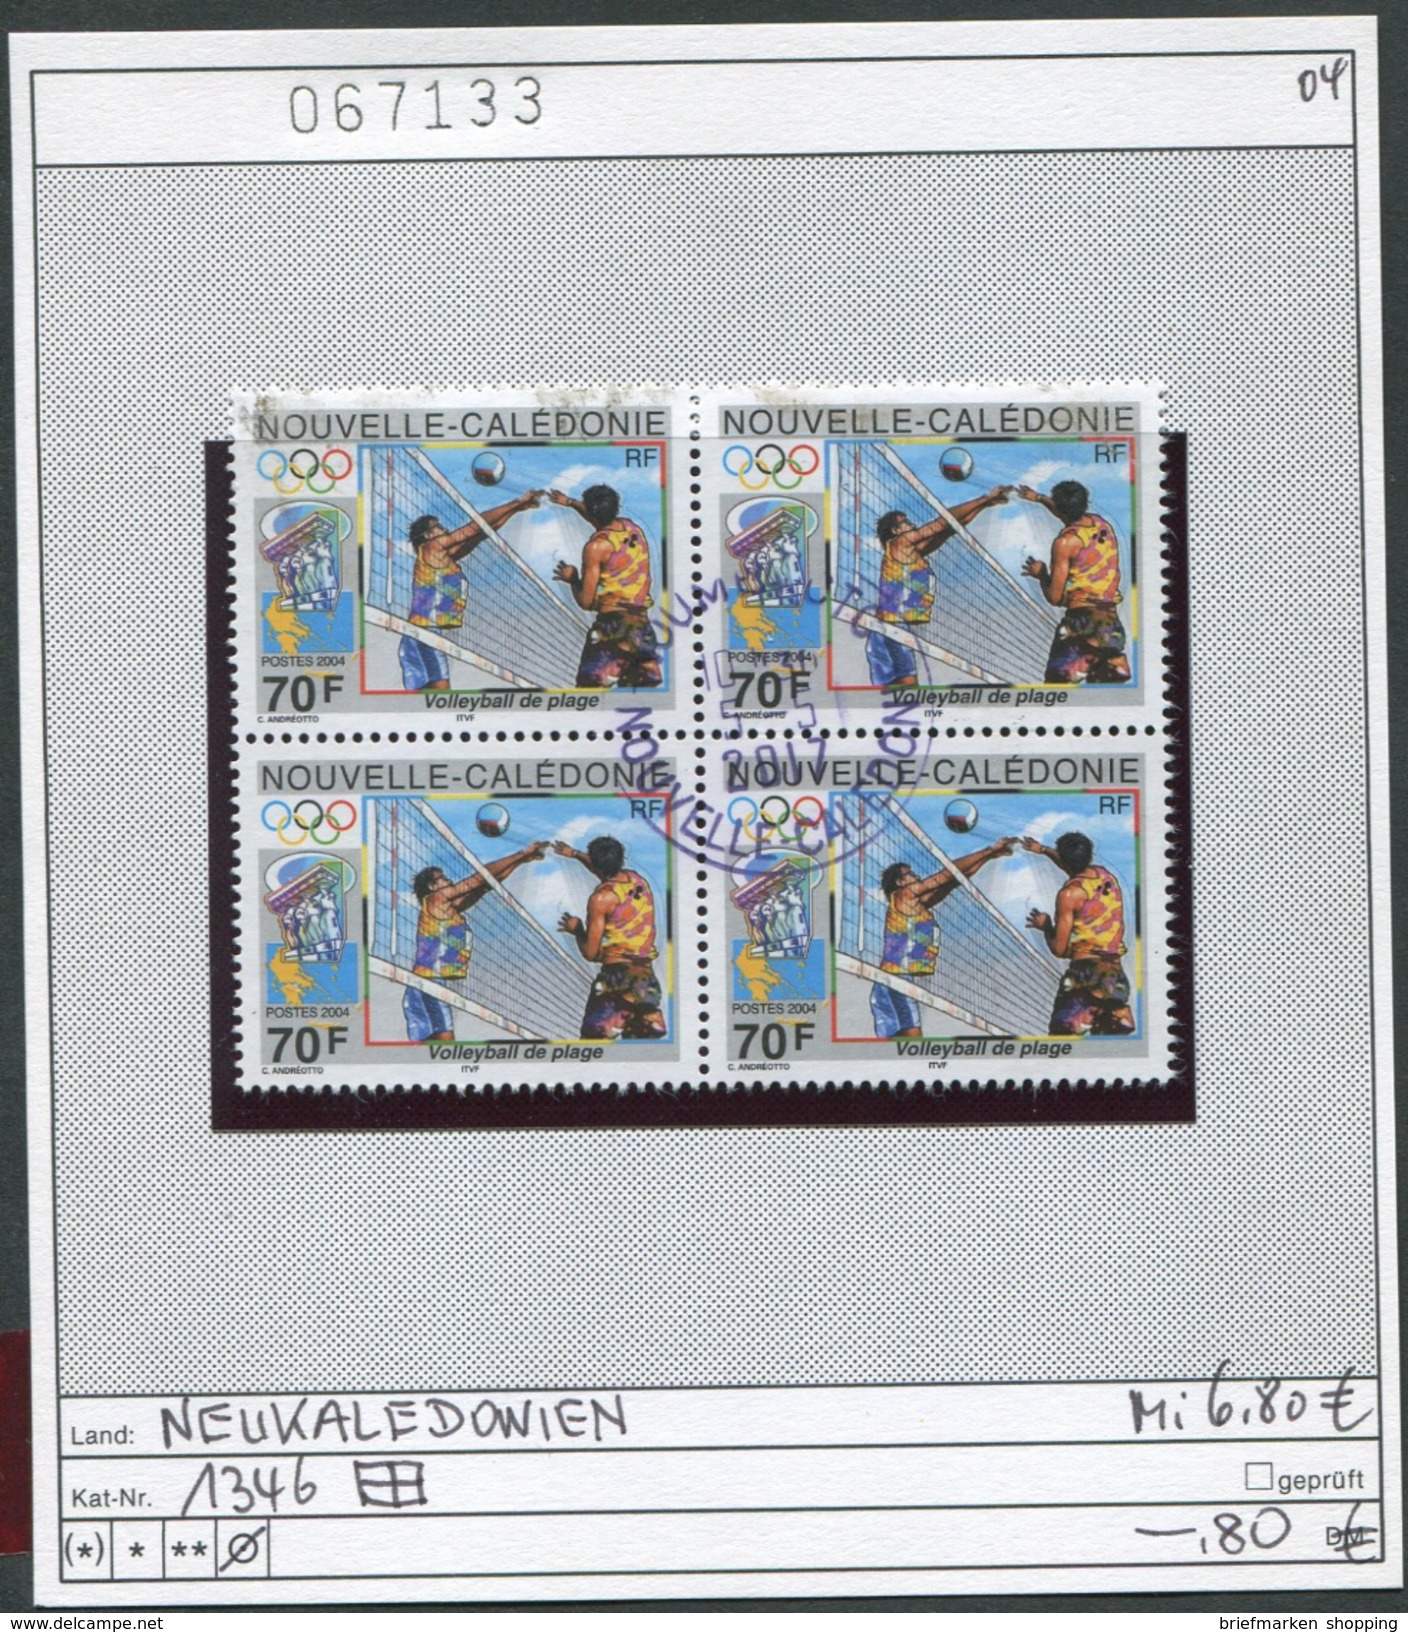 Neukaledonien 2004 - Nouvelle Caledonie 2004 - Michel 1346 Im Viererblock - Oo Oblit. Used Gebruikt - Usados